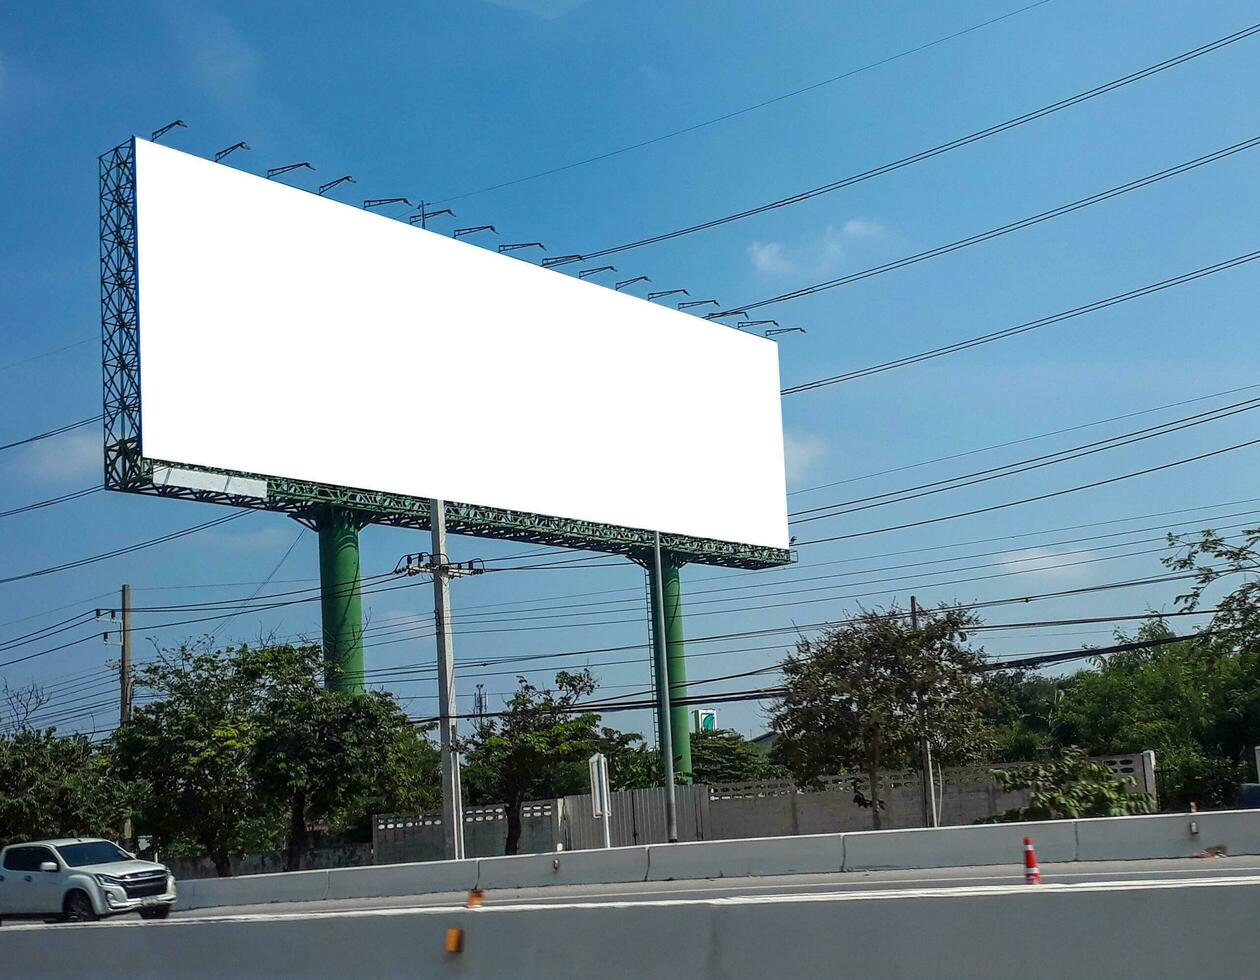 cartelera blanco para al aire libre publicidad póster a azul cielo. foto